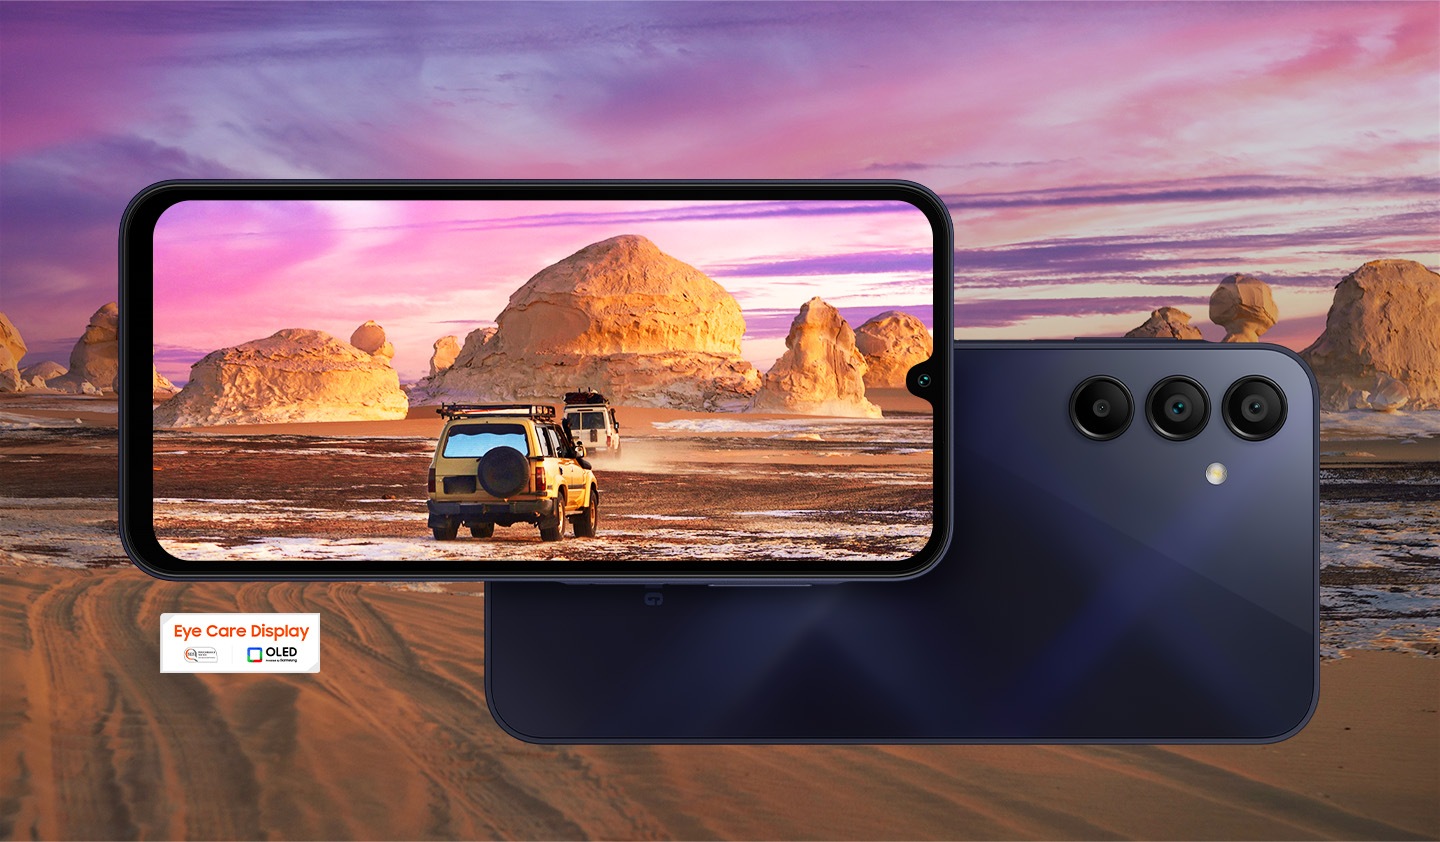 En arrière-plan, un beau paysage du désert est montré. Au premier plan, deux appareils Galaxy A15, avec la gauche montrant l’écran et la droite montrant l’arrière, sont affichés. Le paysage se chevauche sur l’écran de l’appareil de gauche et montre deux camions conduisant dans le désert. En bas à gauche, le logo Eye Care Display est affiché.